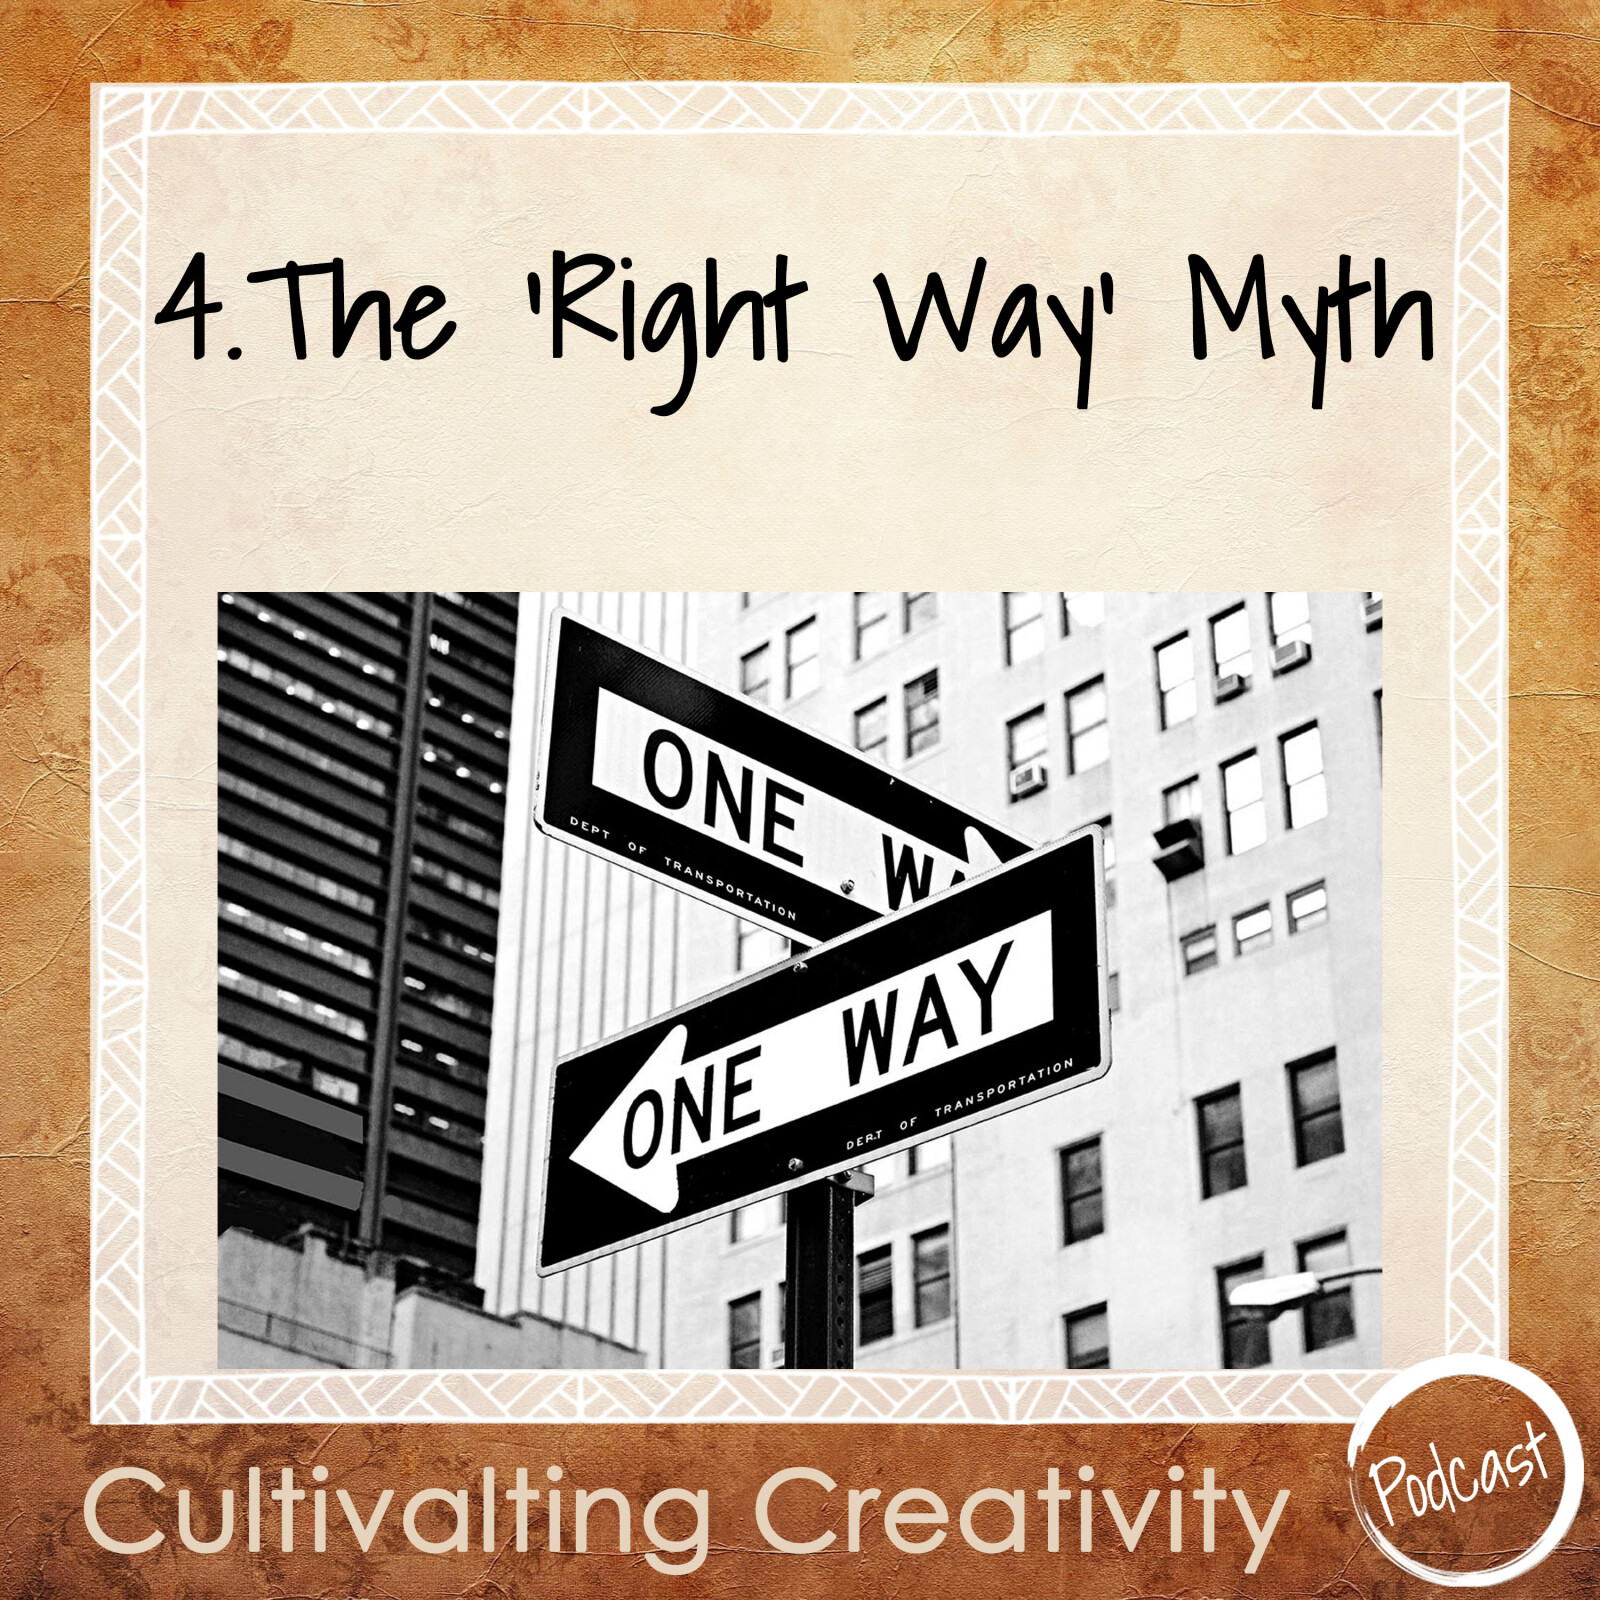 4. The "Right Way" Myth